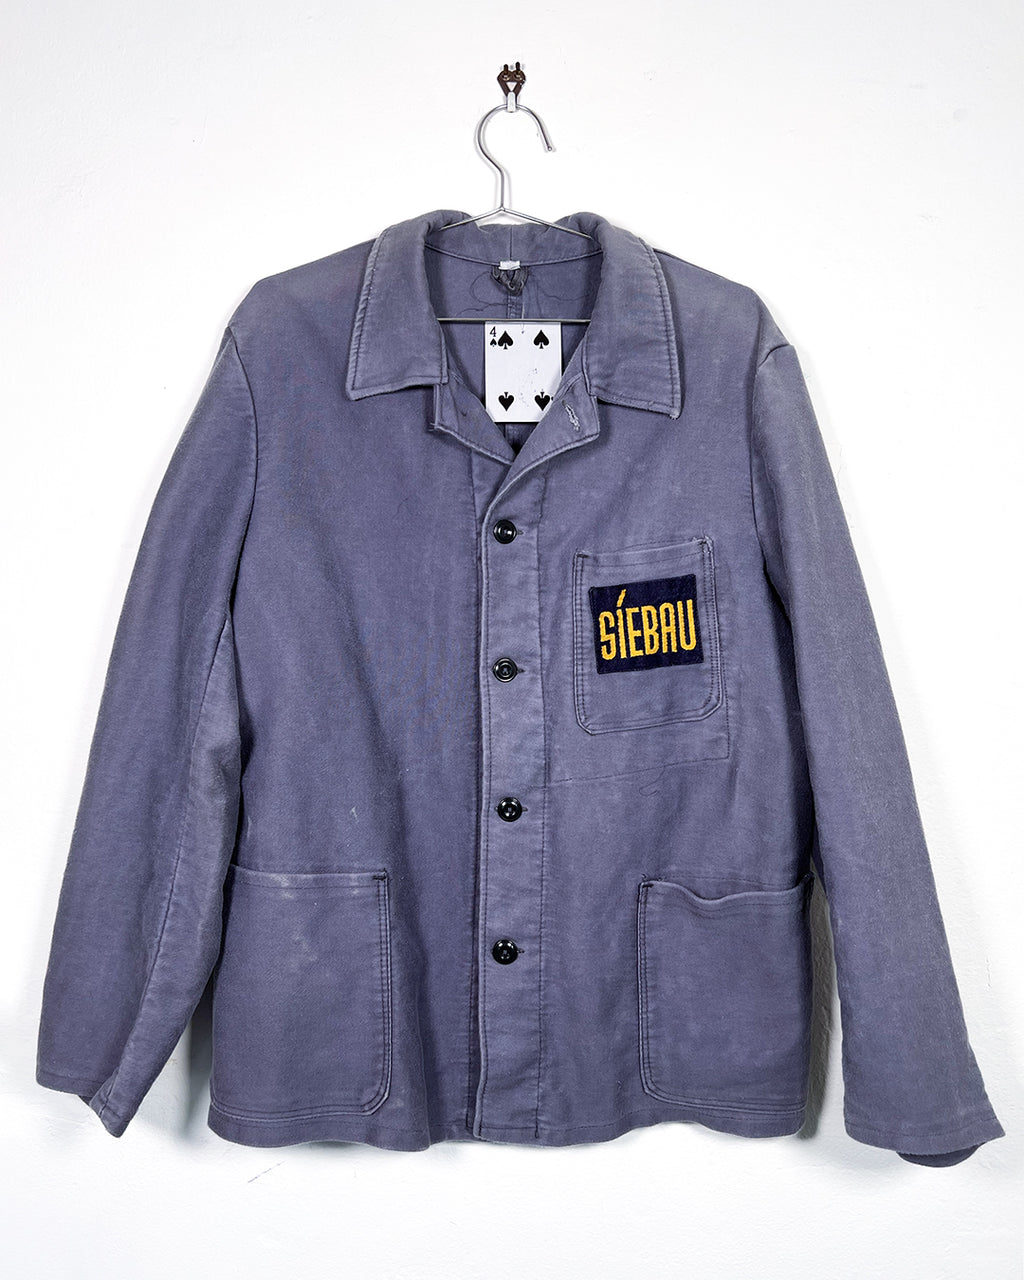 Vintage Siebau French Workman Jacket